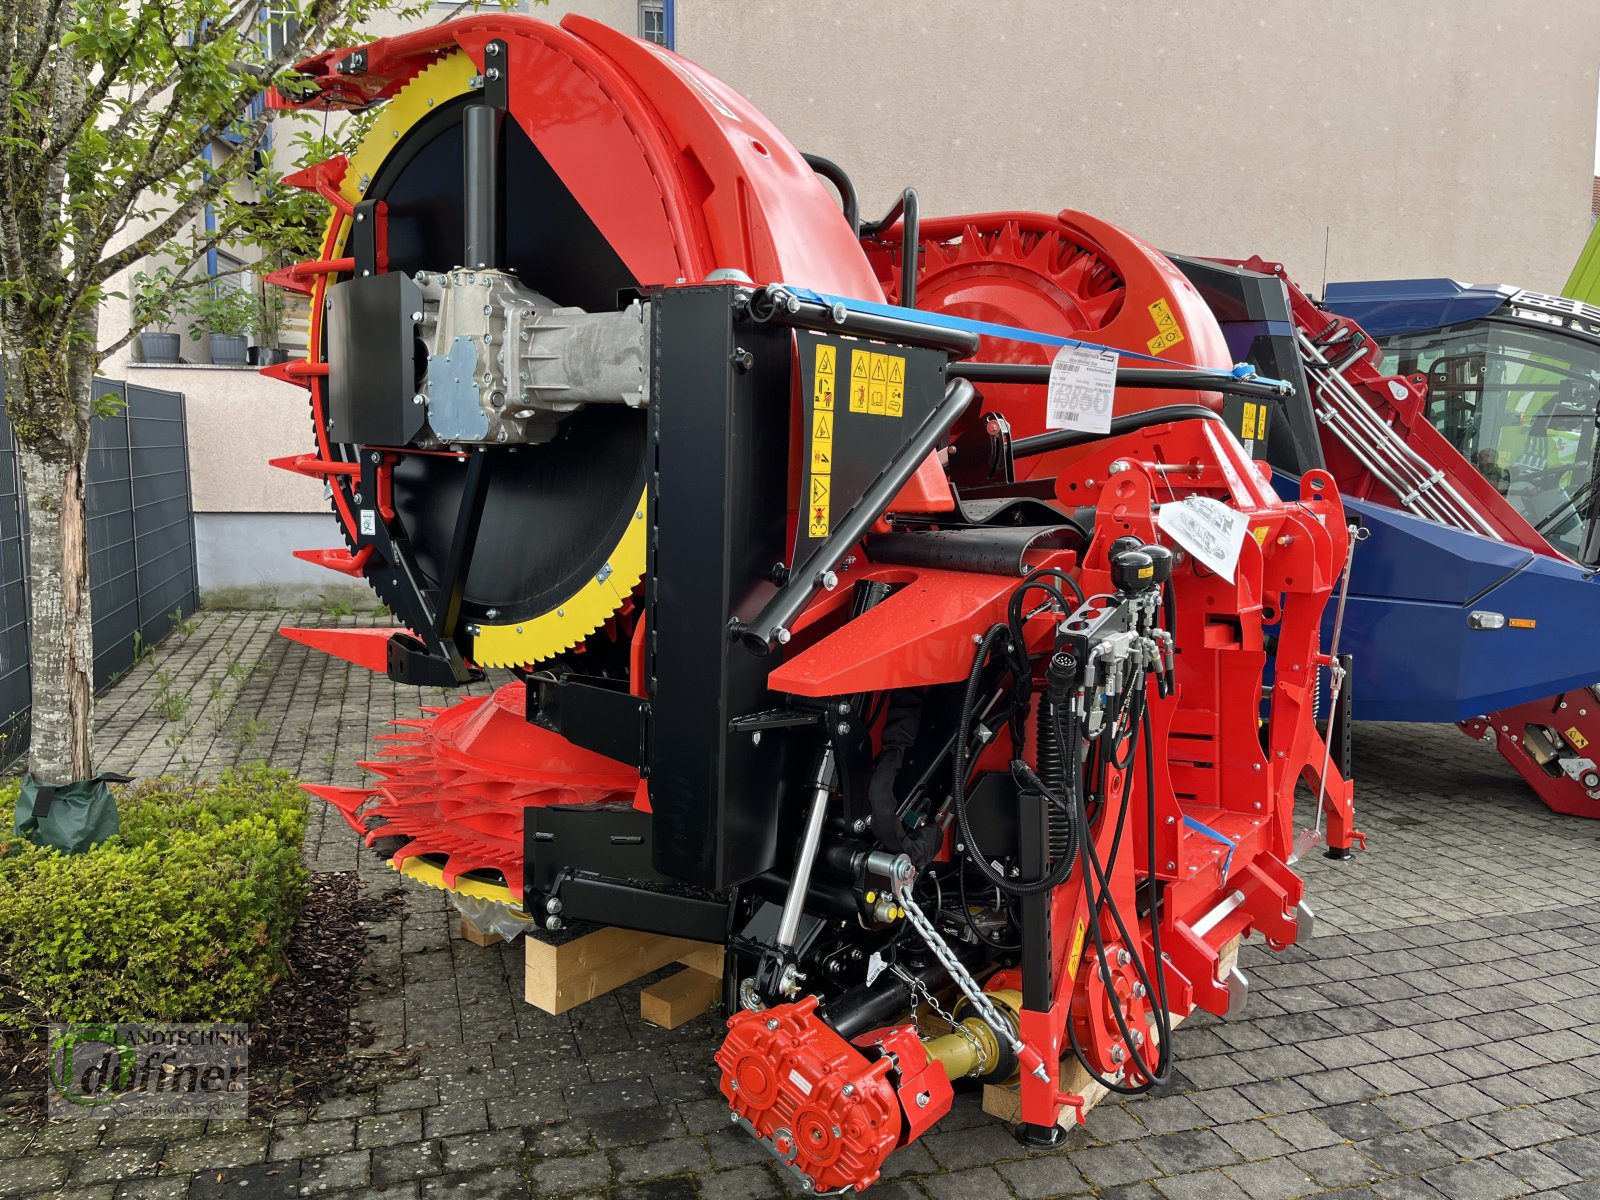 Maisgebiß des Typs Kemper Kemper 460 Plus, Neumaschine in Hohentengen (Bild 3)